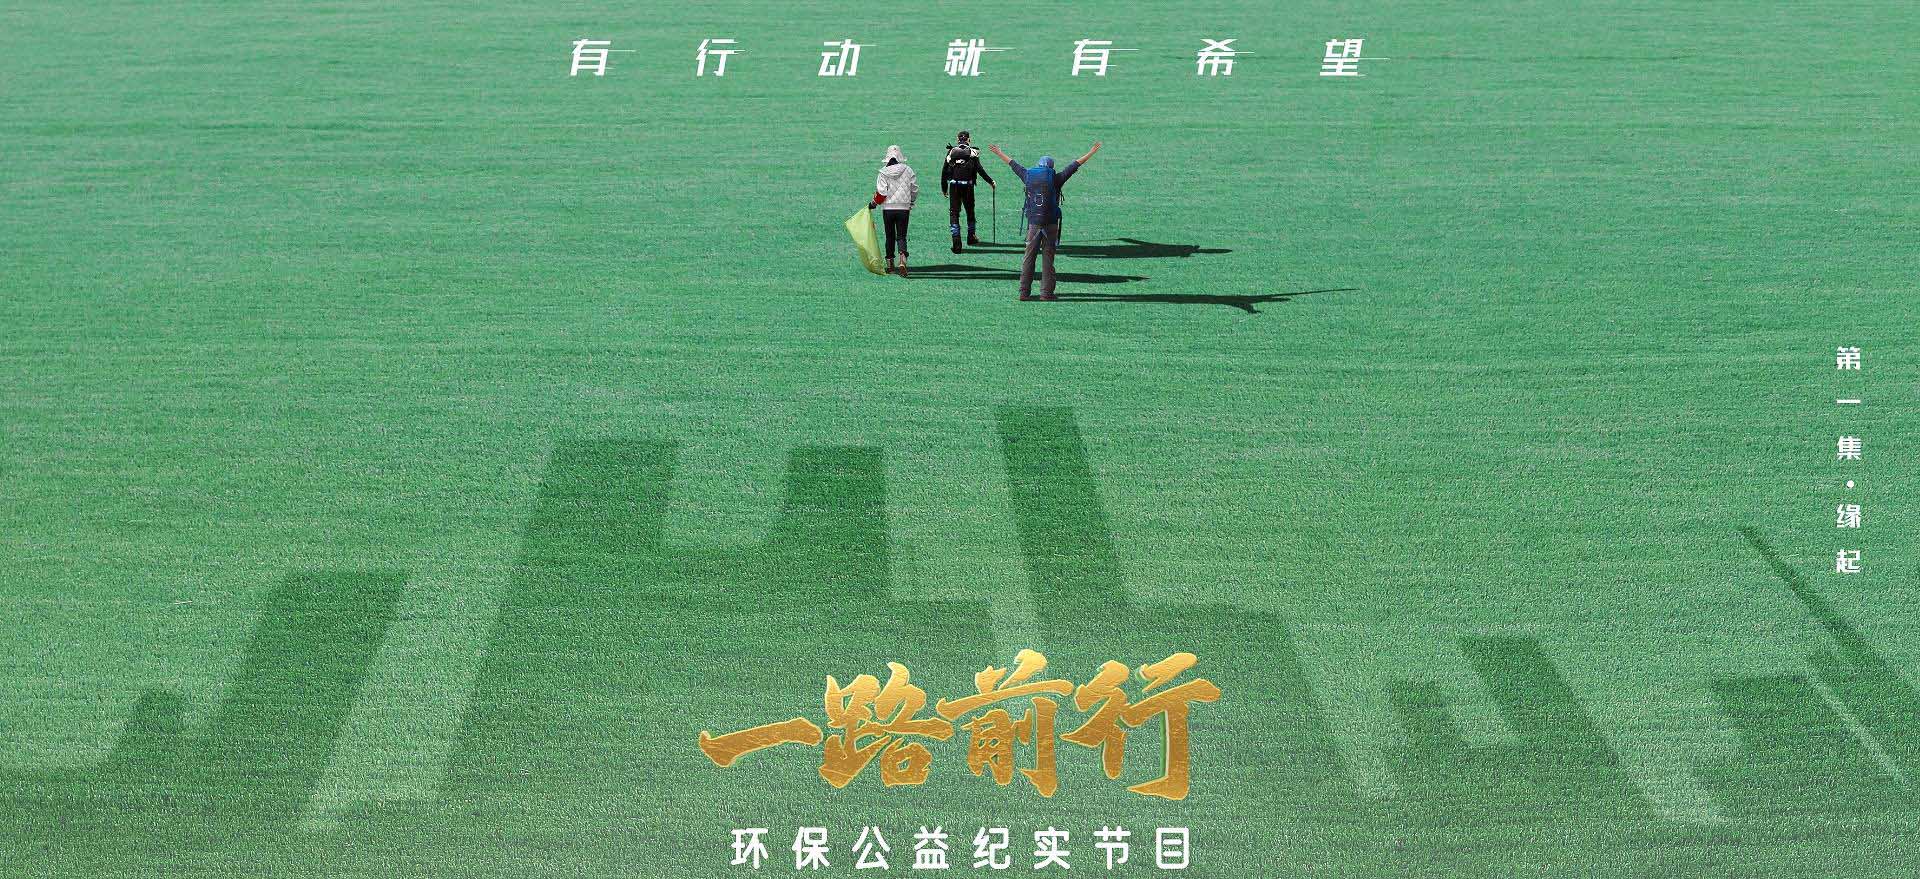 《一路前行》胡歌、刘涛、陈龙这次携手做环保公益 